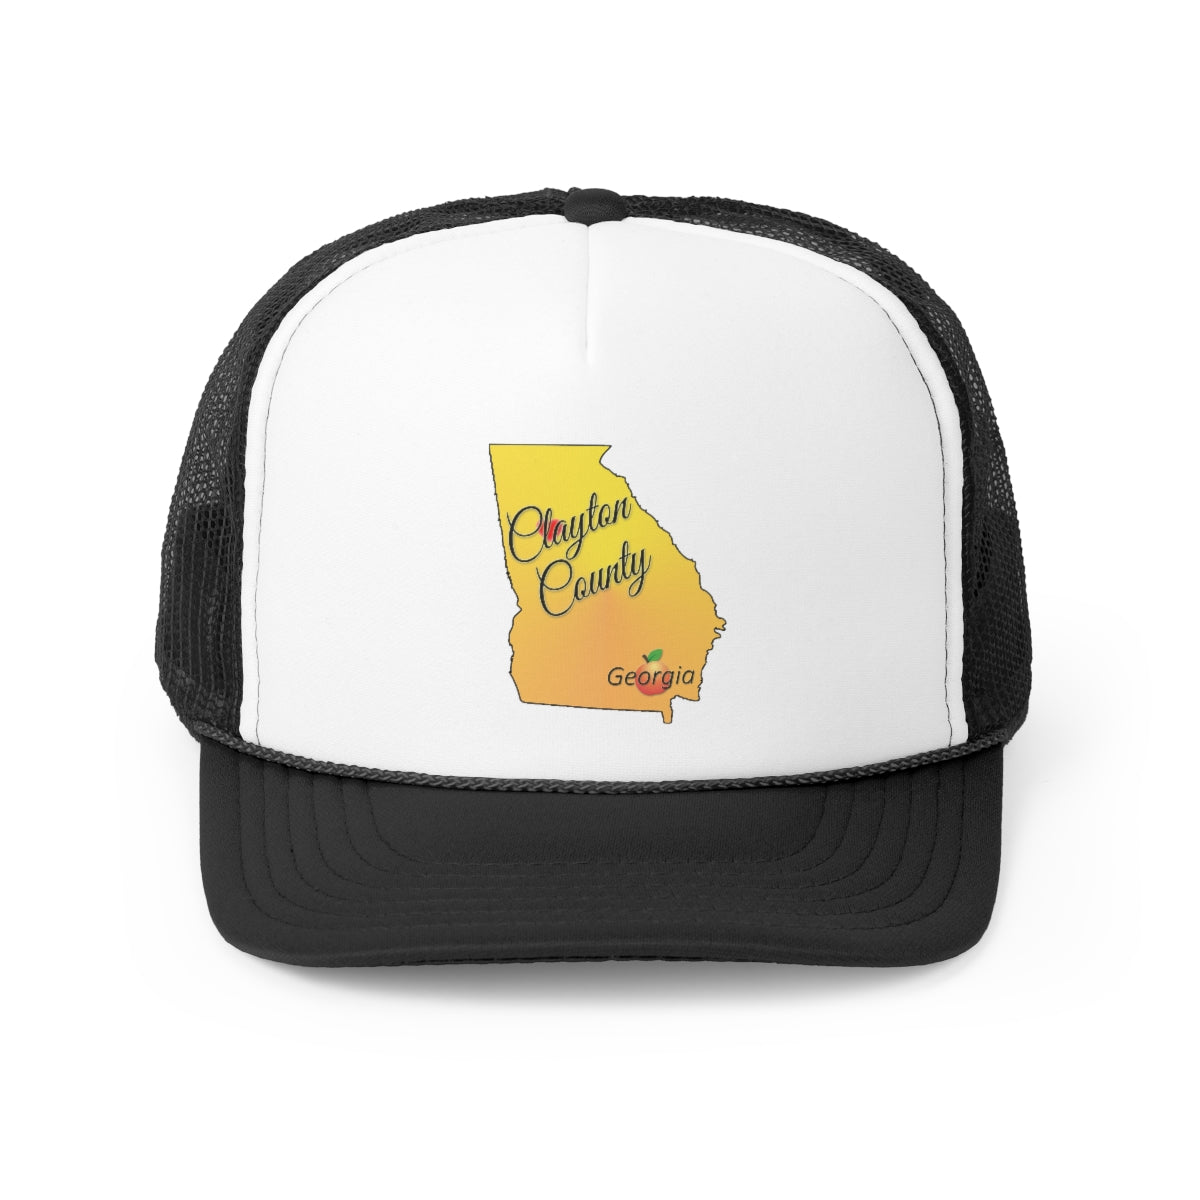 Clayton County Georgia Trucker Cap